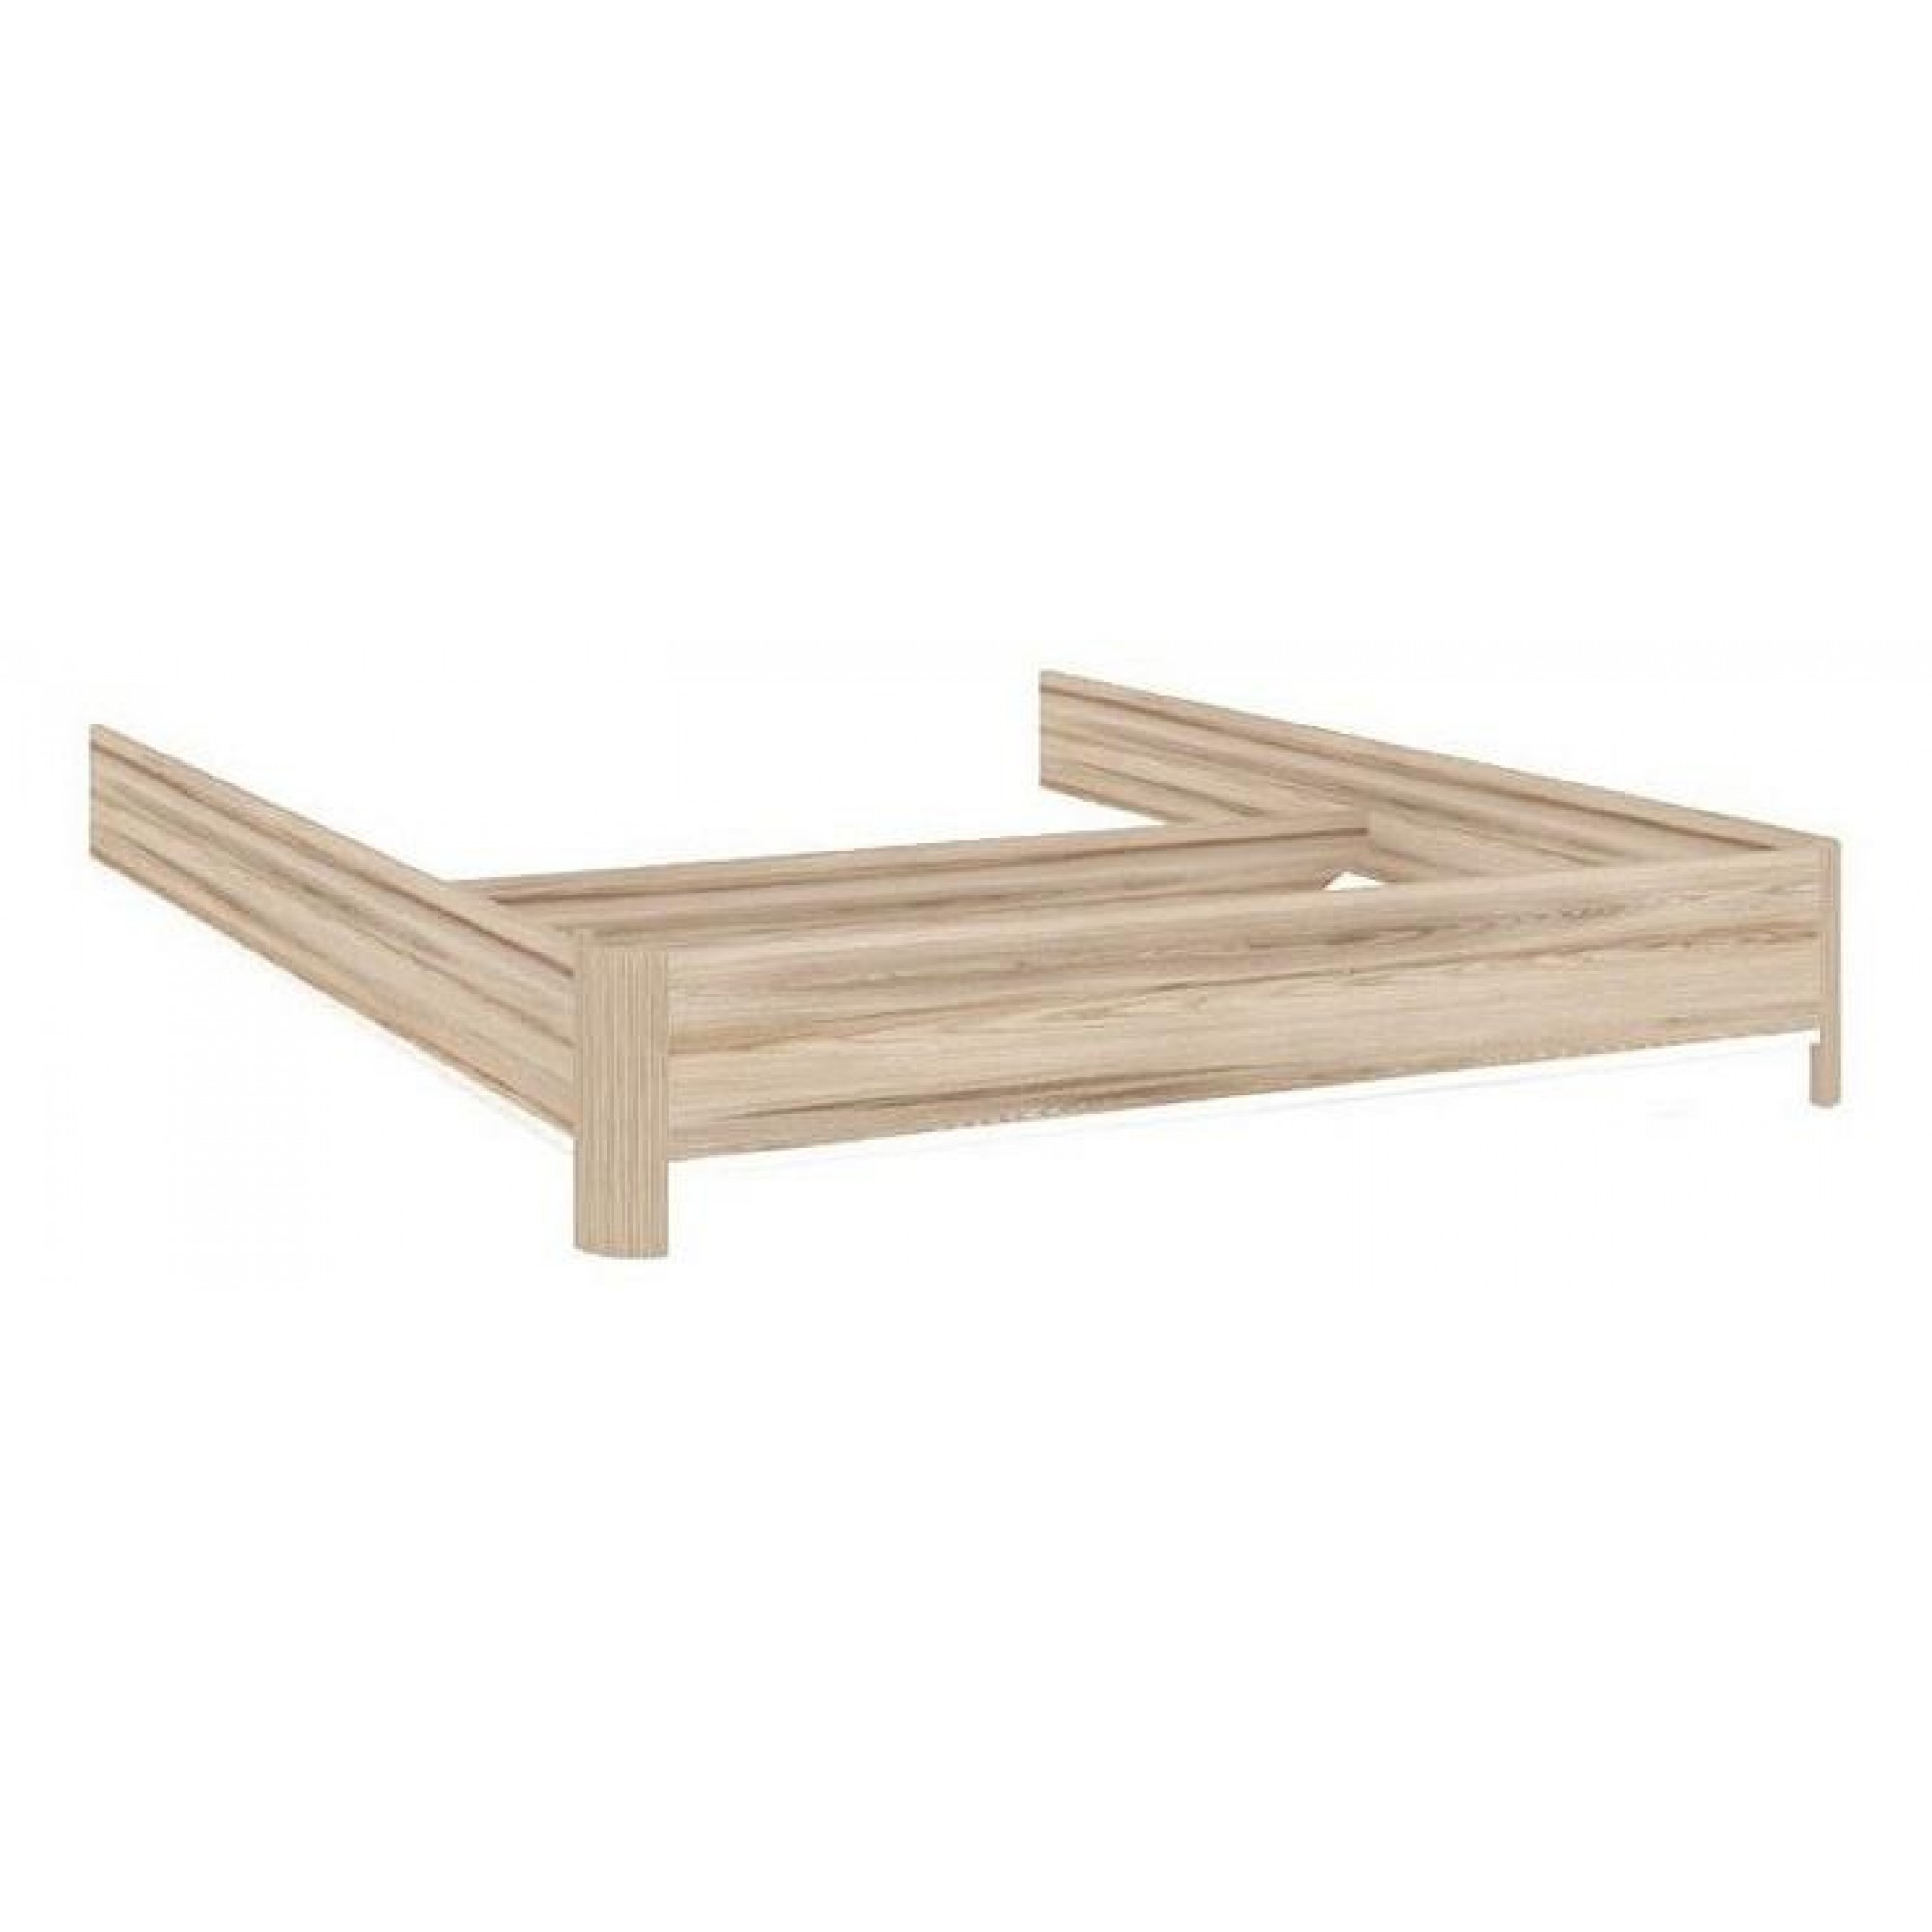 Короб для кровати Марта ЛД 636.150.000 древесина коричневая светлая древесина 2042x1642x350(LD_42795)